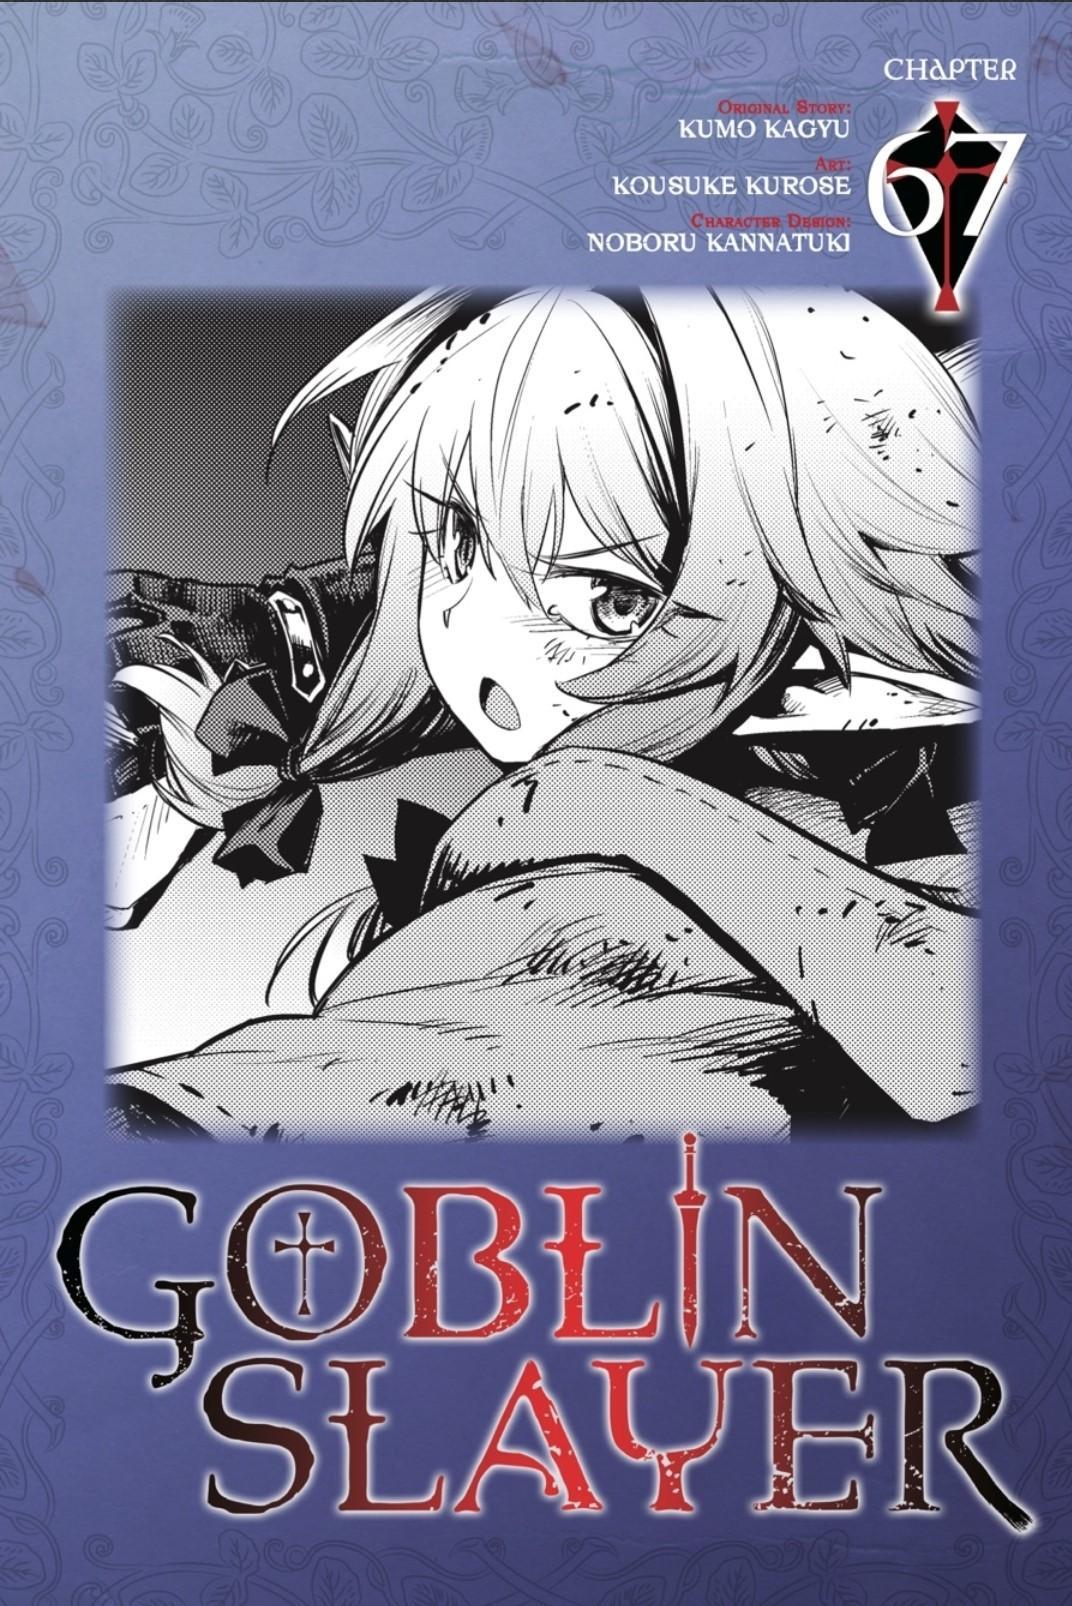 Read goblin slayer online manga